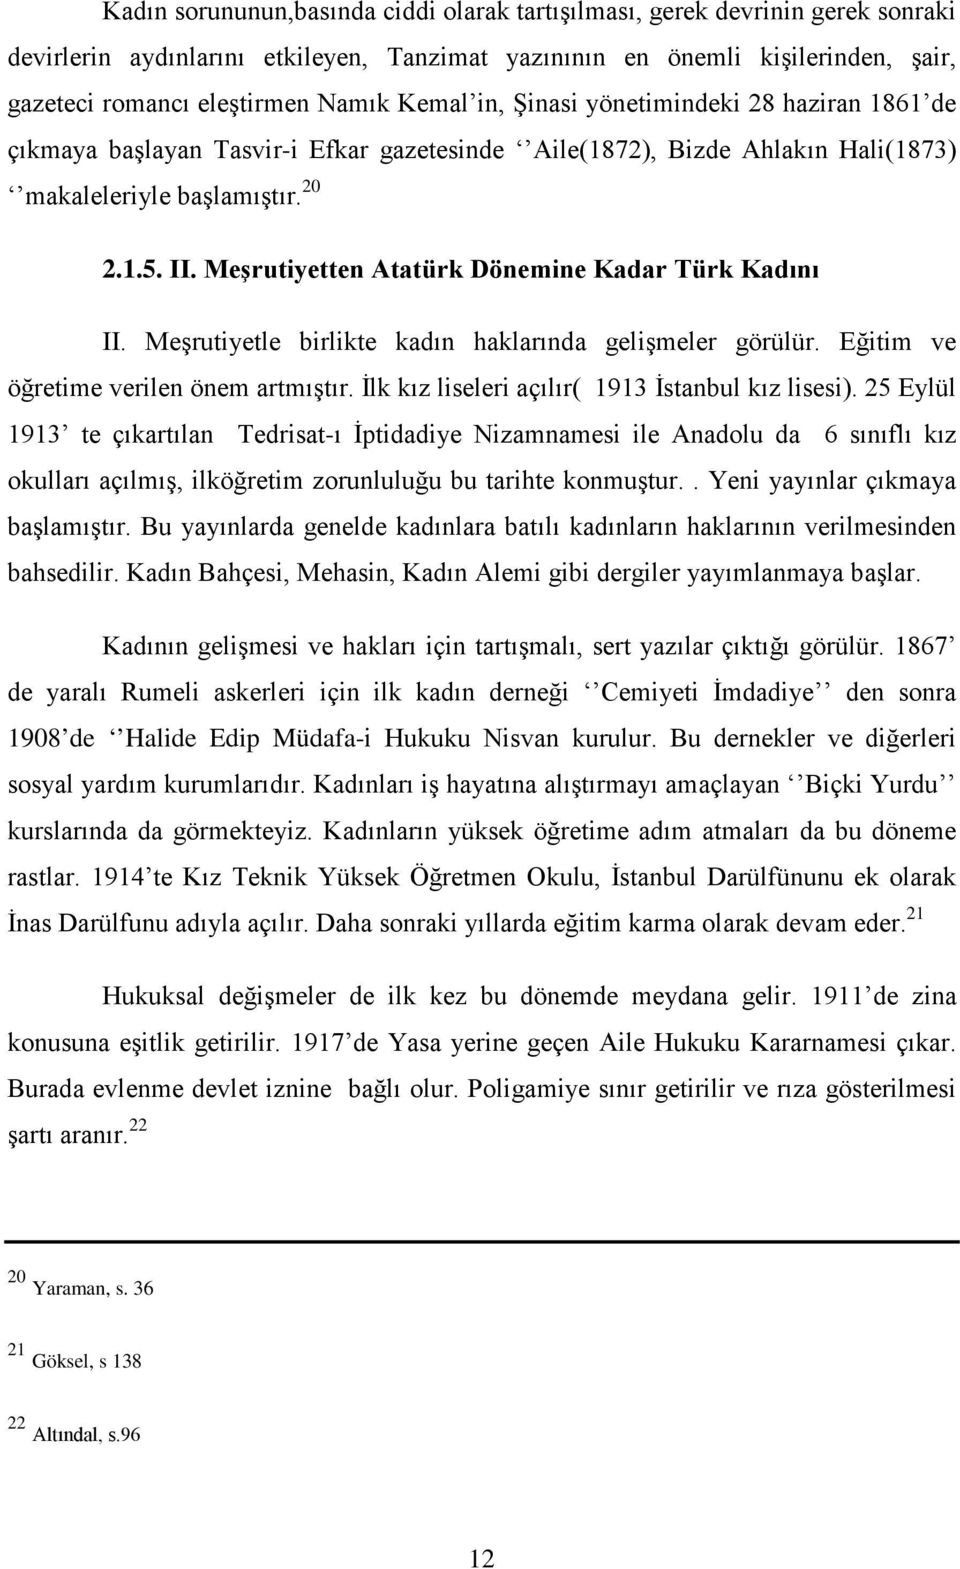 Meşrutiyetten Atatürk Dönemine Kadar Türk Kadını II. Meşrutiyetle birlikte kadın haklarında gelişmeler görülür. Eğitim ve öğretime verilen önem artmıştır.